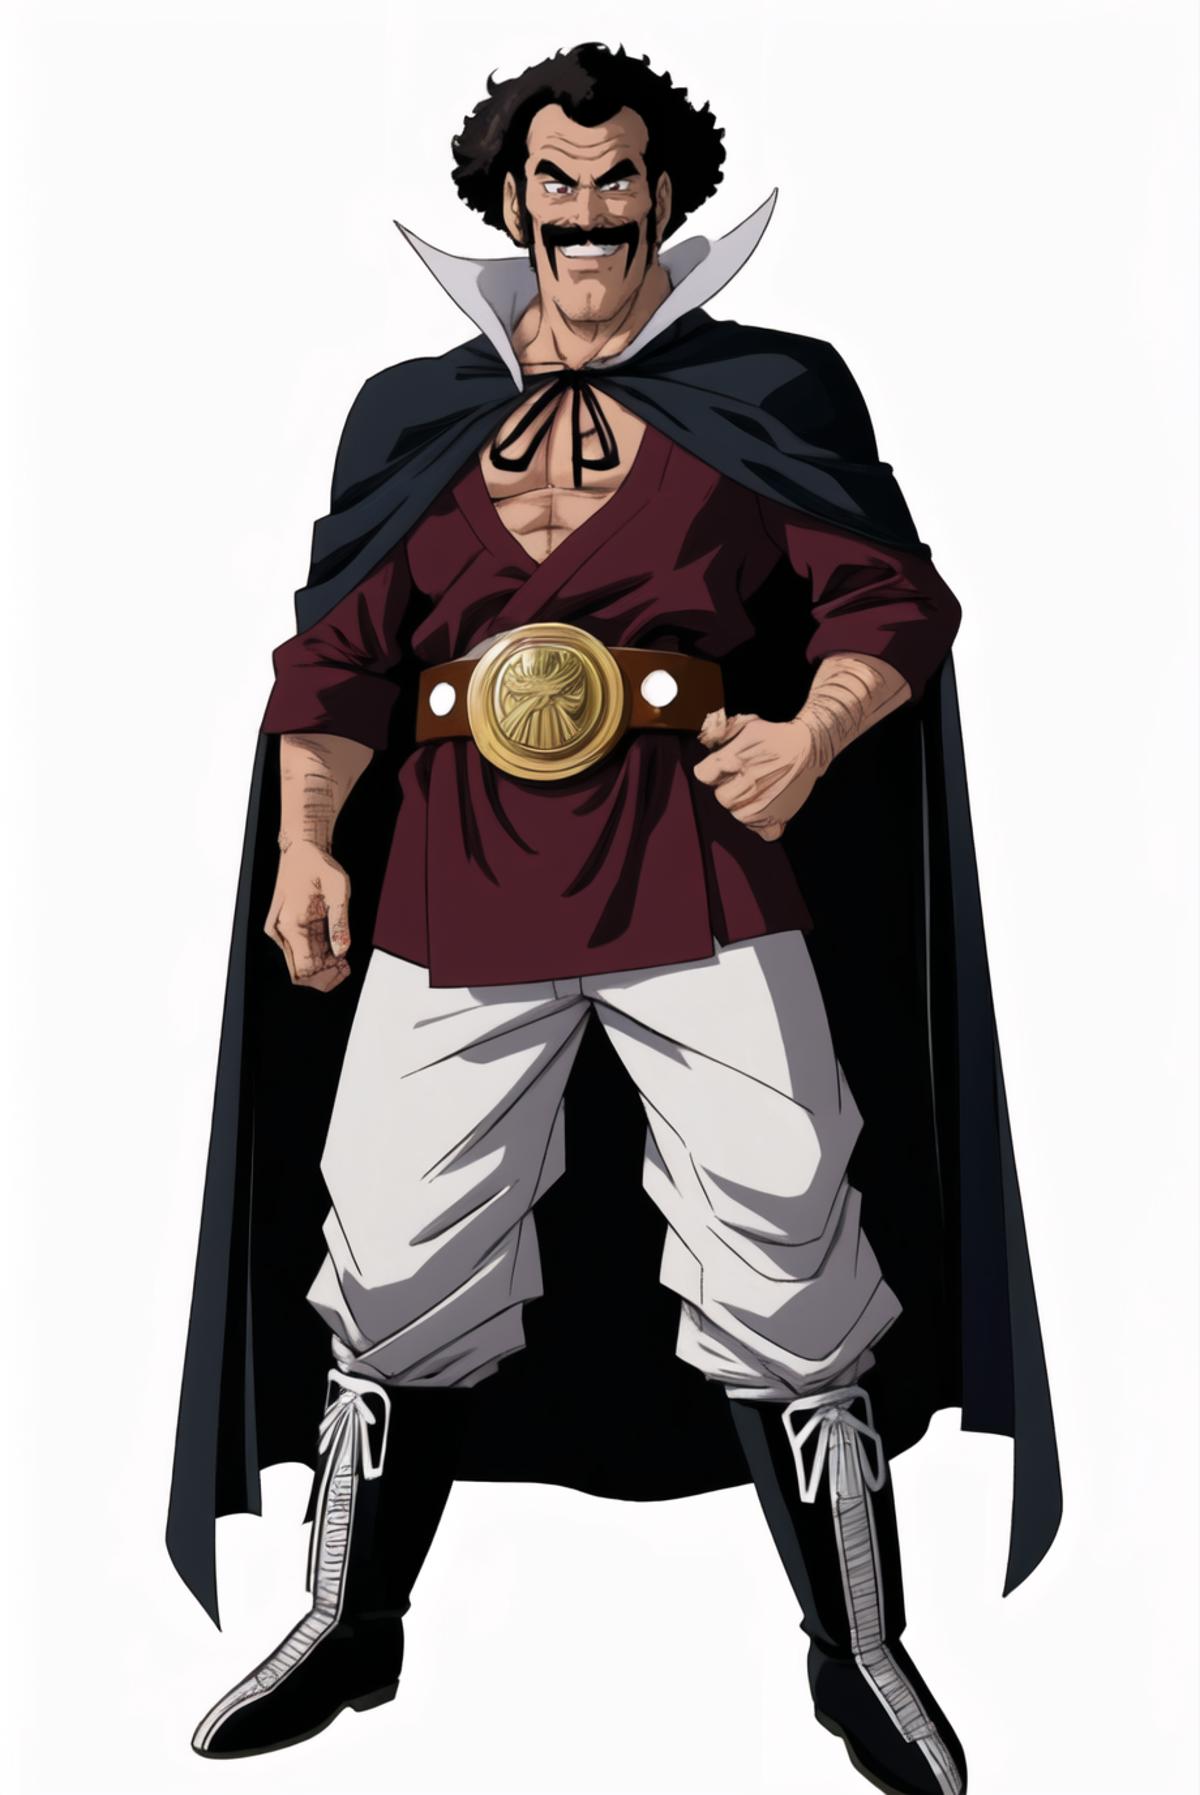 Mr. Satan/ミスター・サタン - Dragon Ball | Character image by Yoshi_